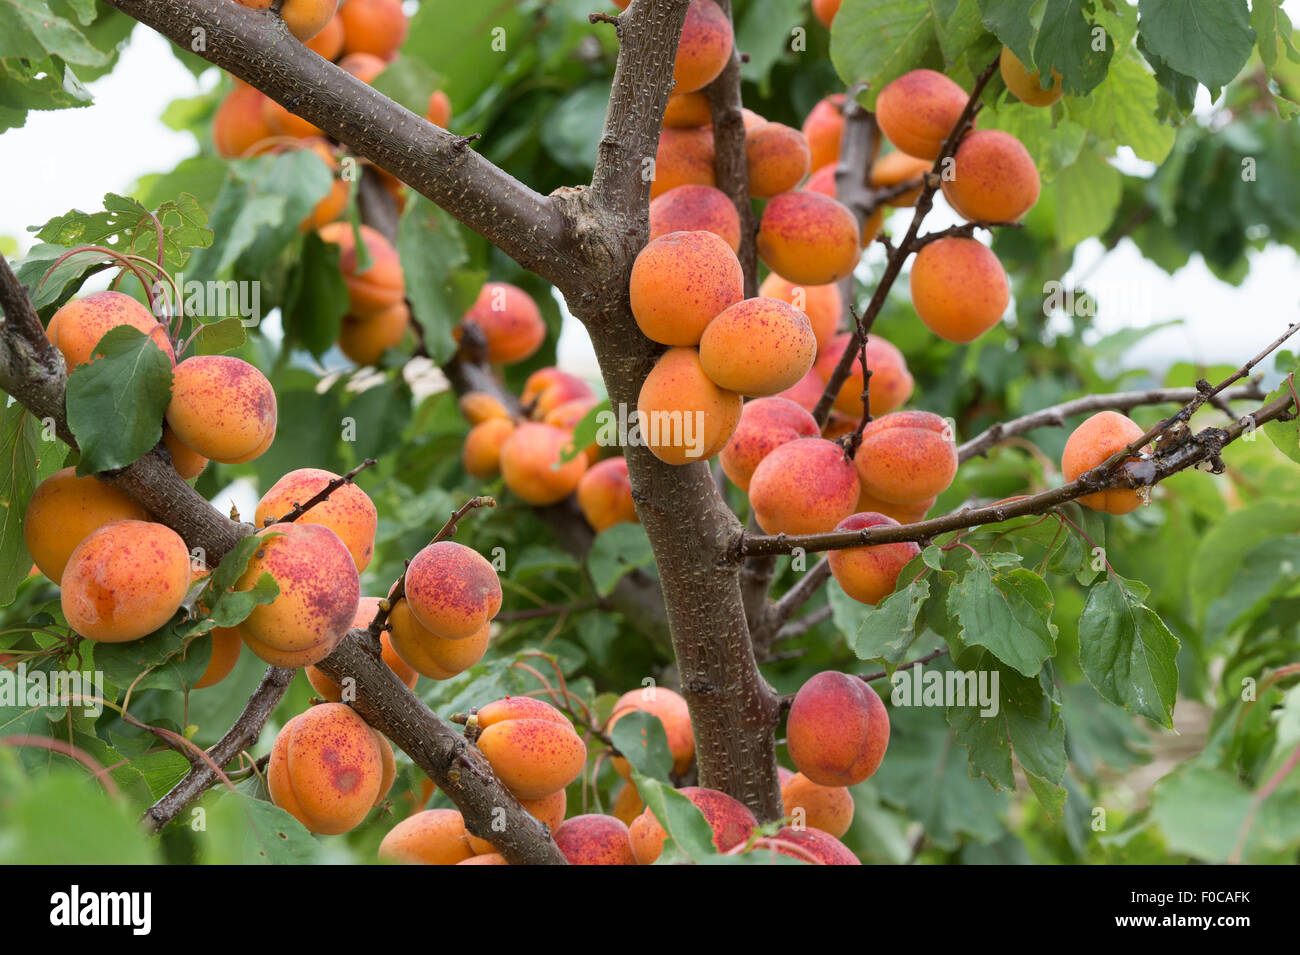 Prunus armeniaca 'Moorpark'. Apricot 'Moorpark' on the tree Stock Photo